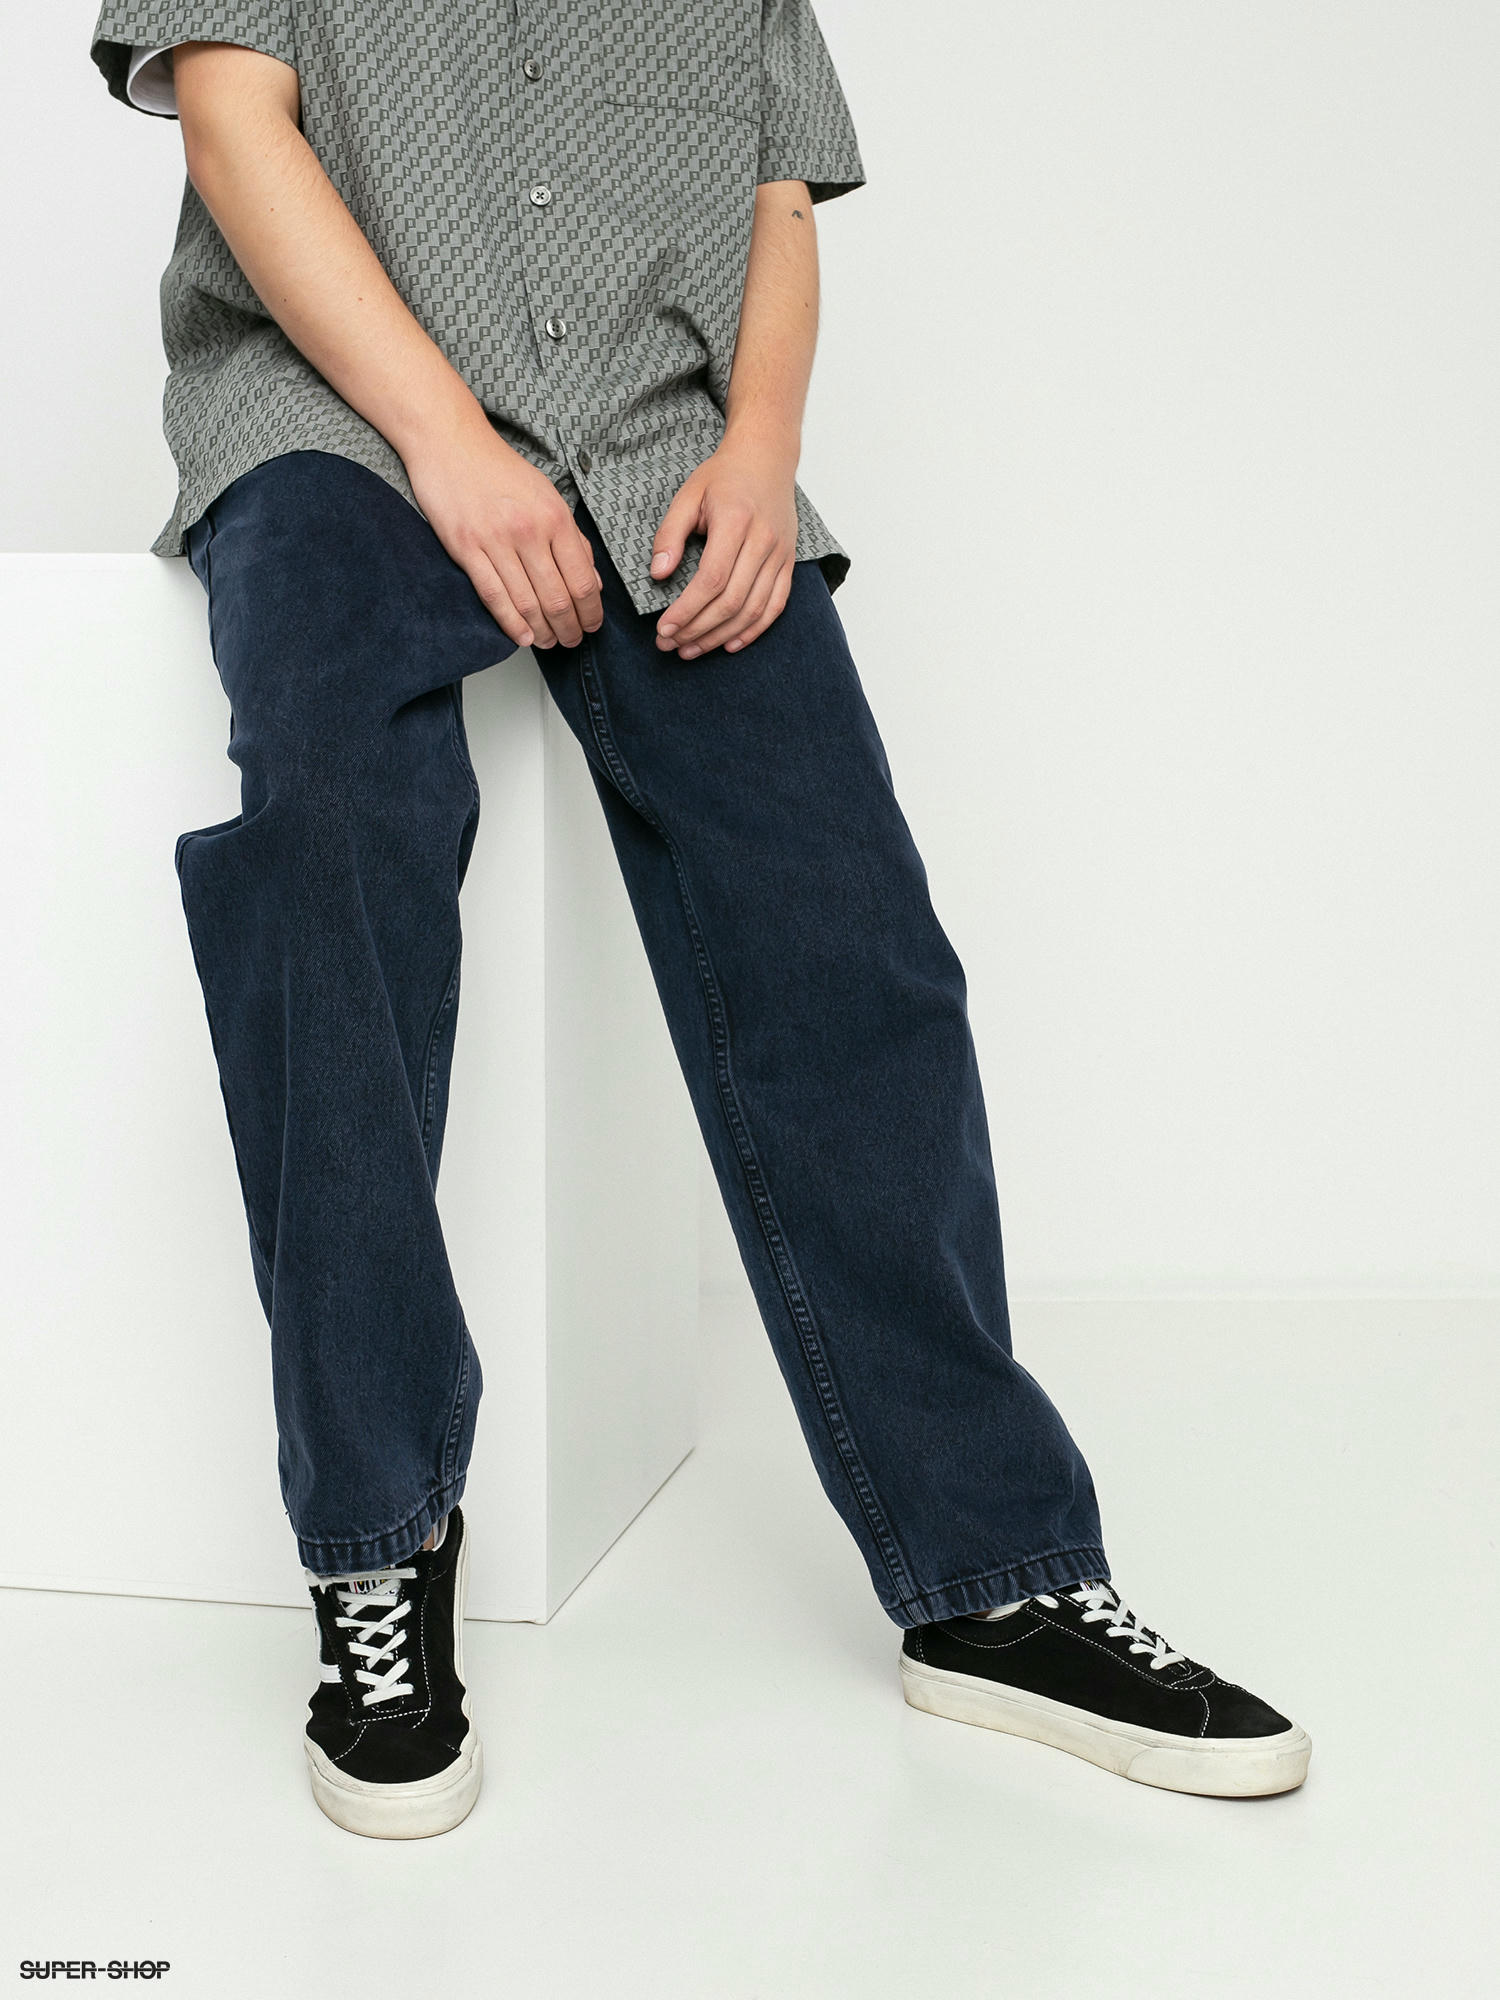 Polar Skate 93 Denim Pants (blue black)